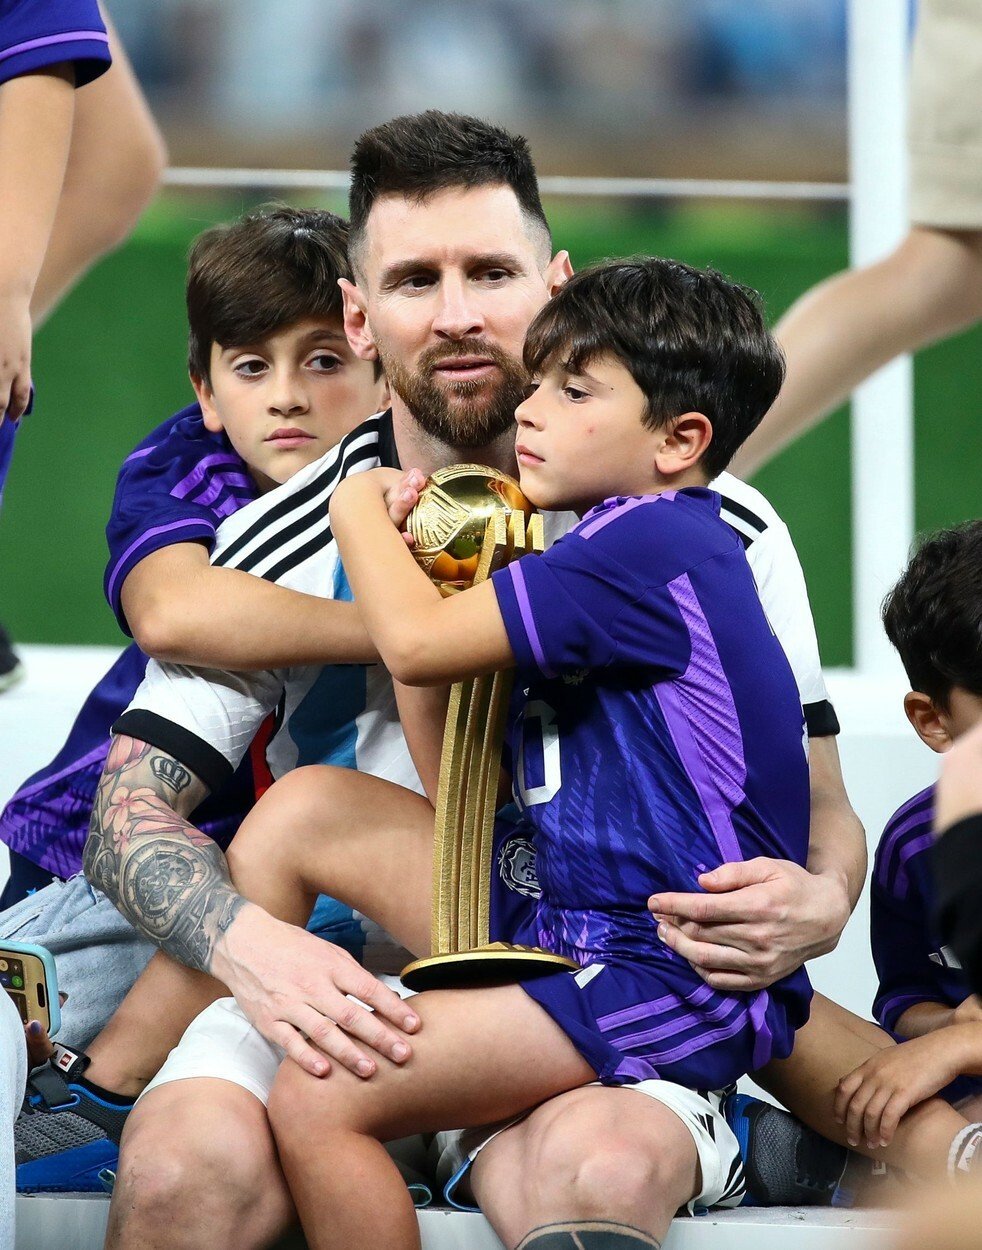 Pro Messiho je rodina velice důležitá. Během šampionátu jej láskyplně podporovala